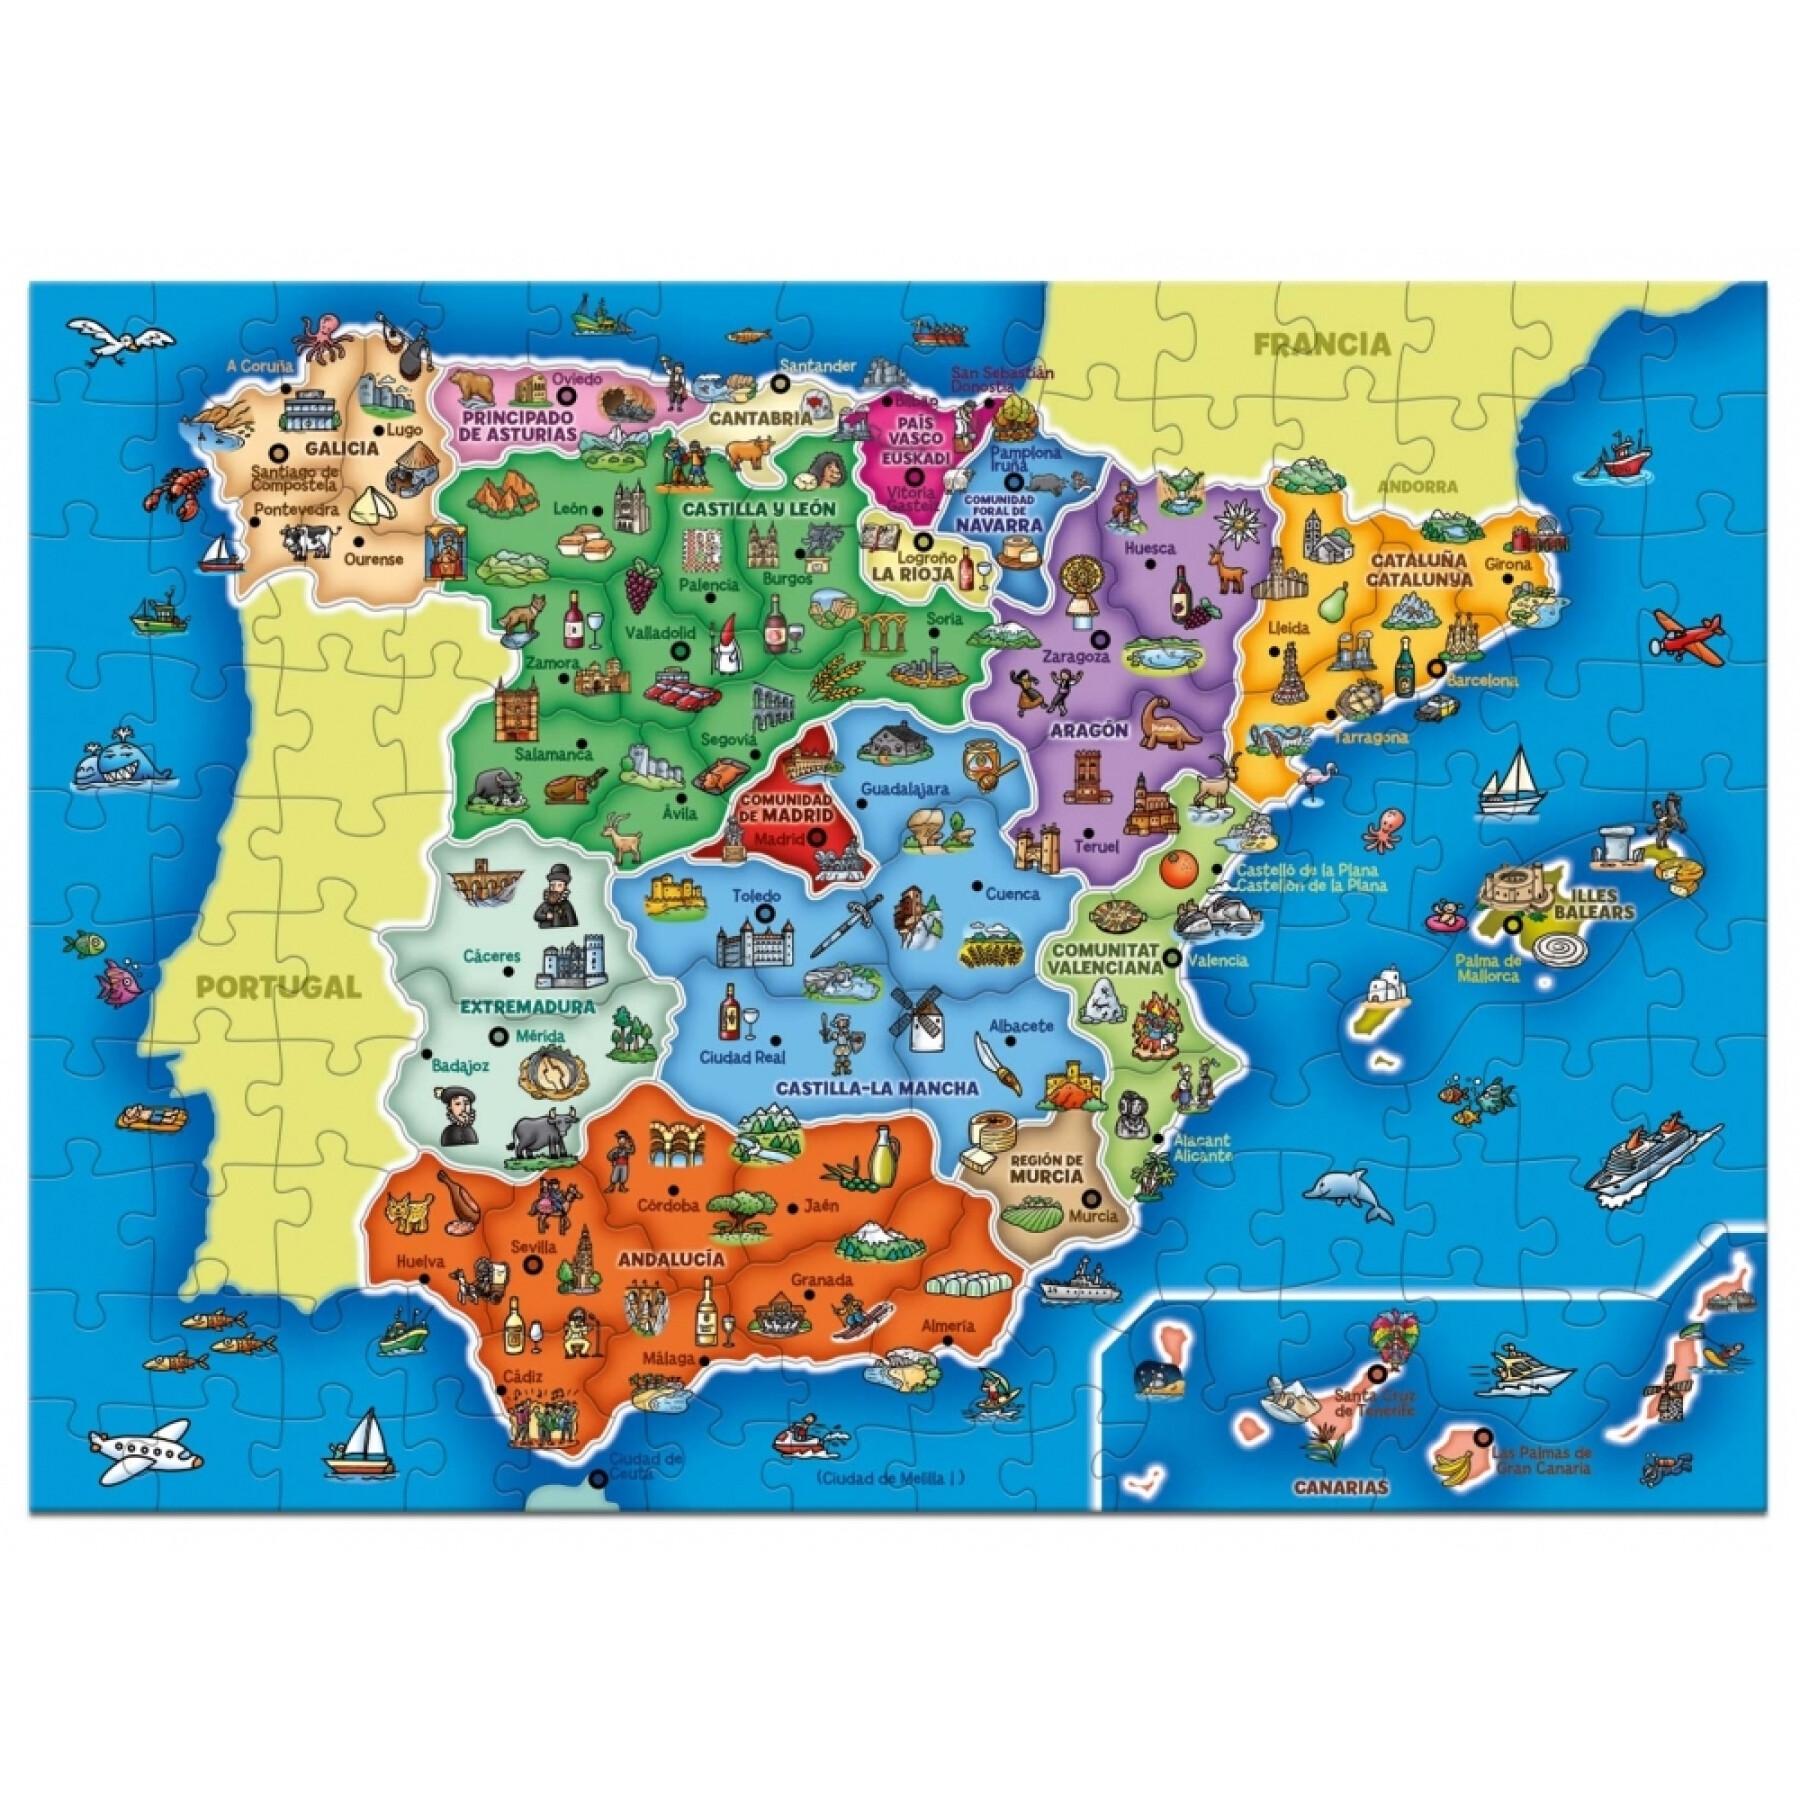 Puzzle de 137 piezas Diset España Prov -Autonomías